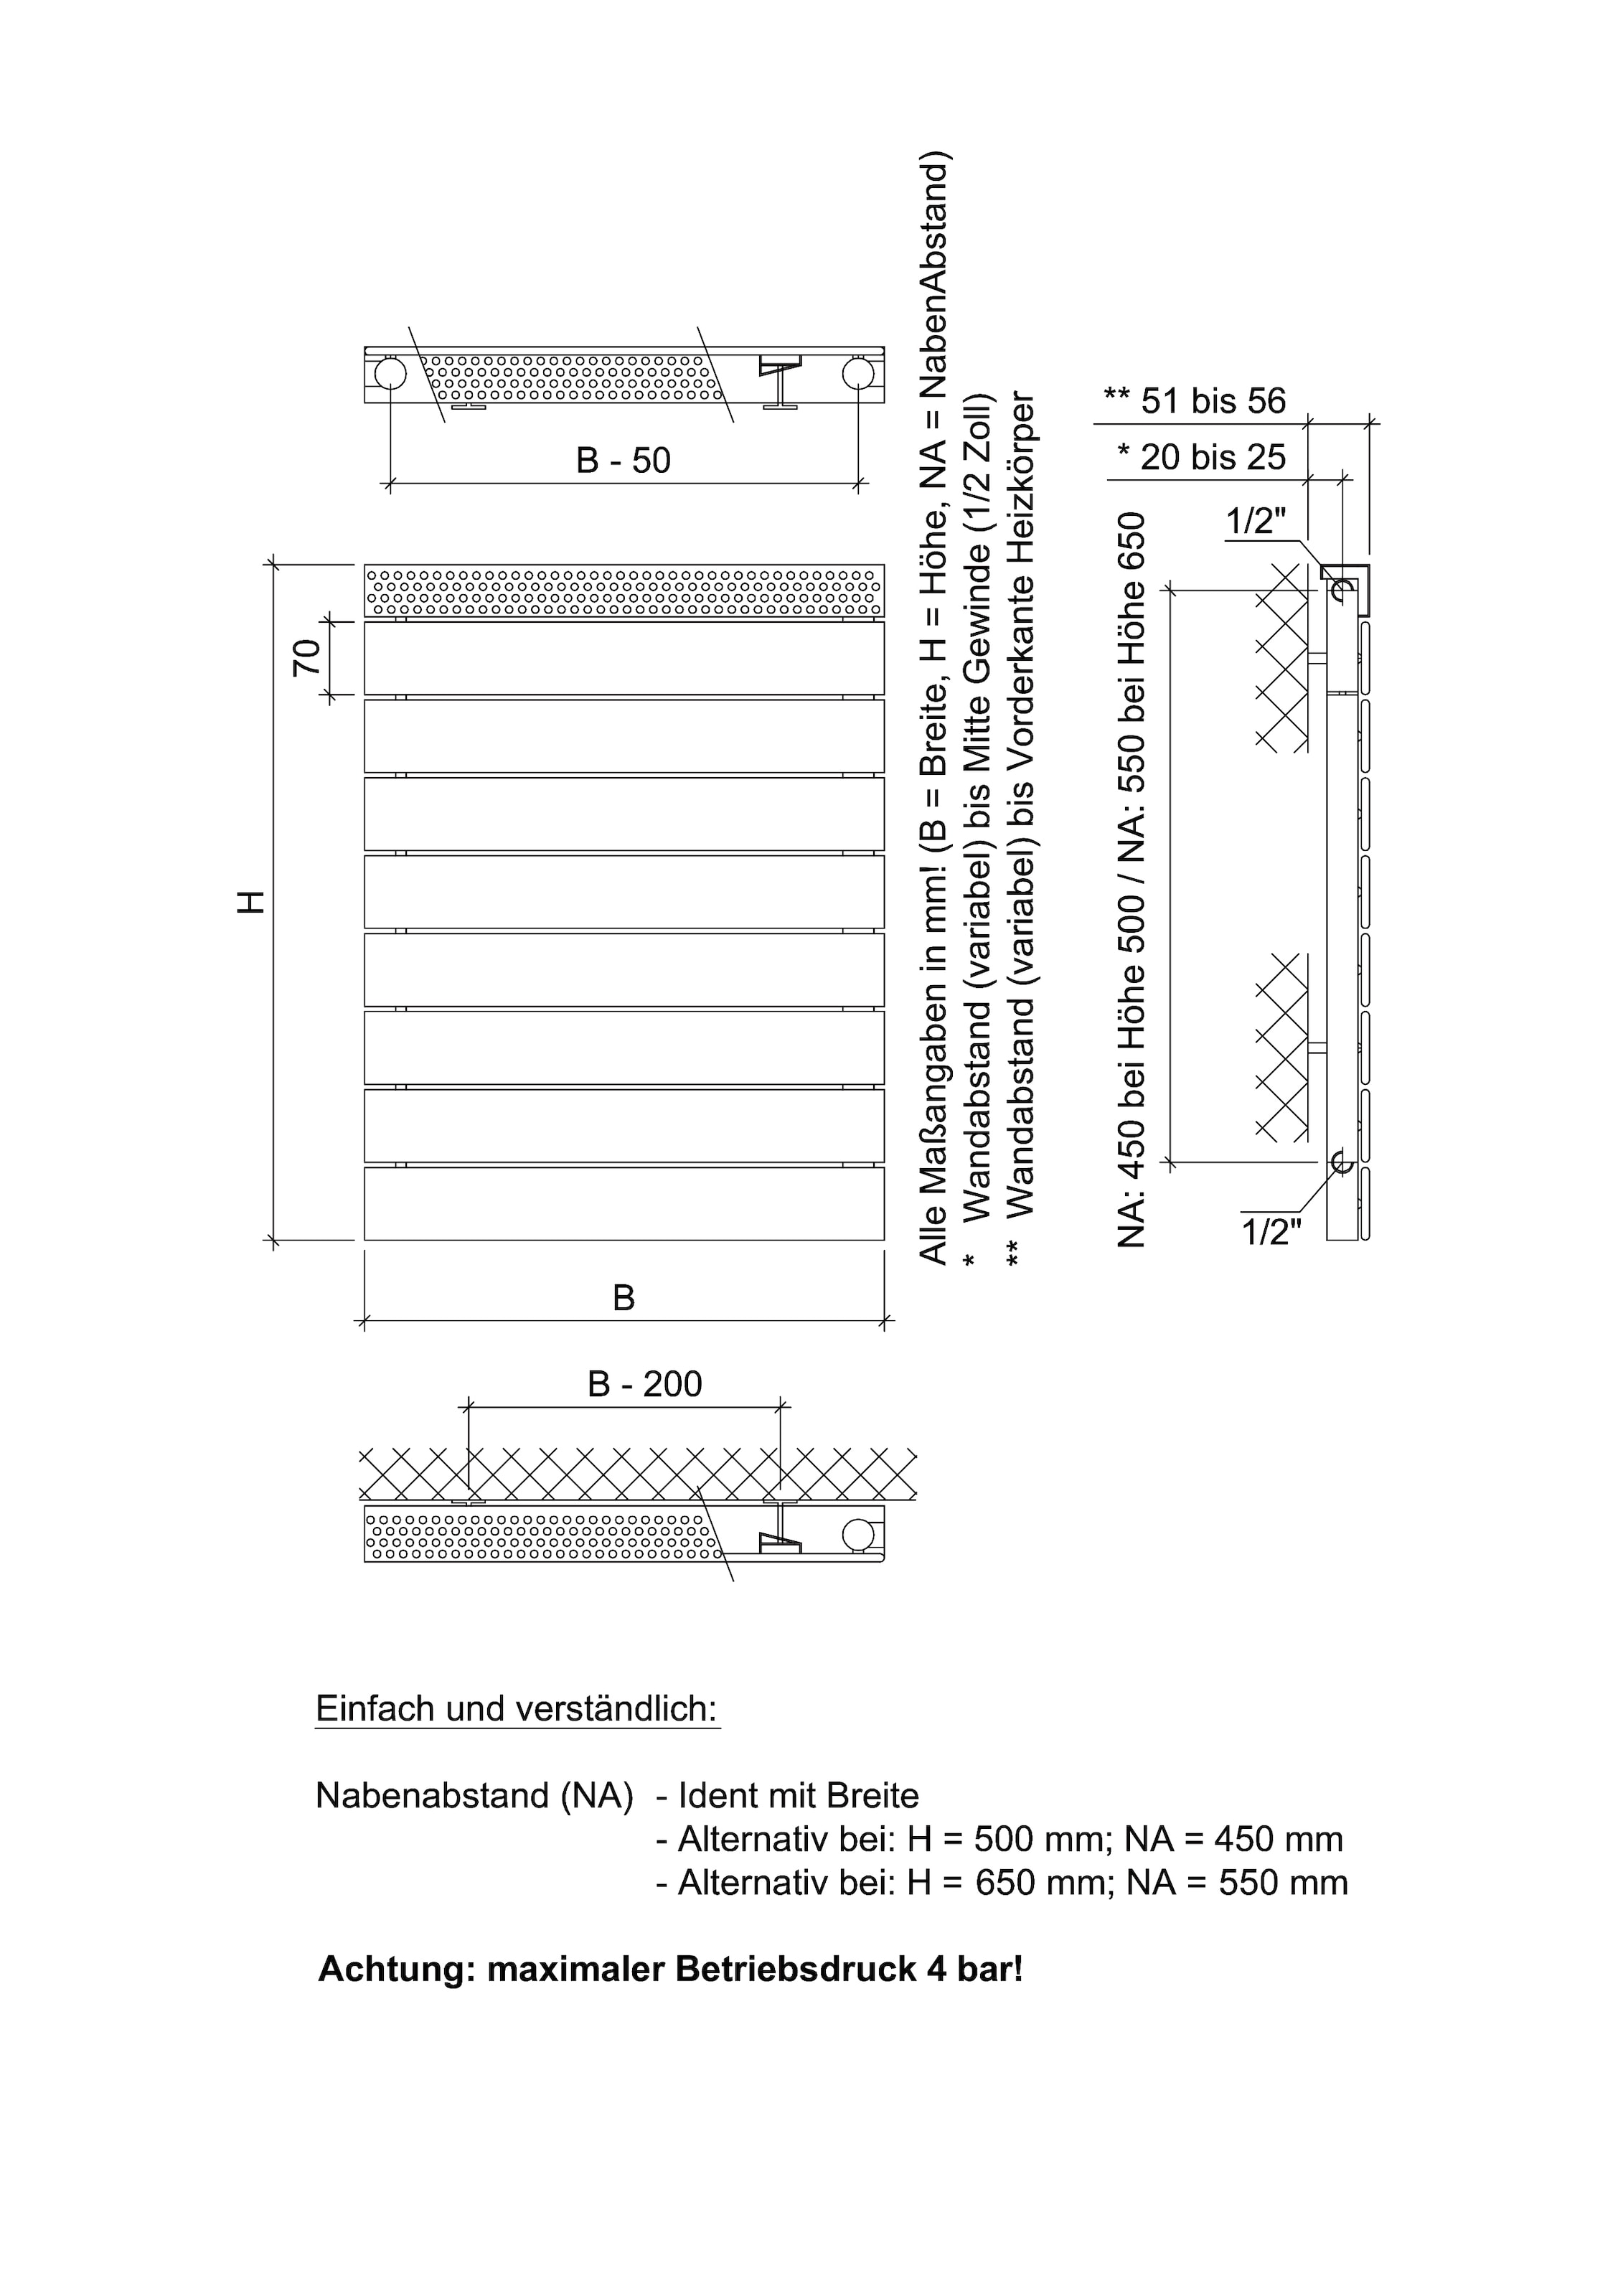 Ximax Badheizkörper »Pep 650 mm x 500 mm«, 426 Watt, Seitenanschluss NA: 550 mm, weiß